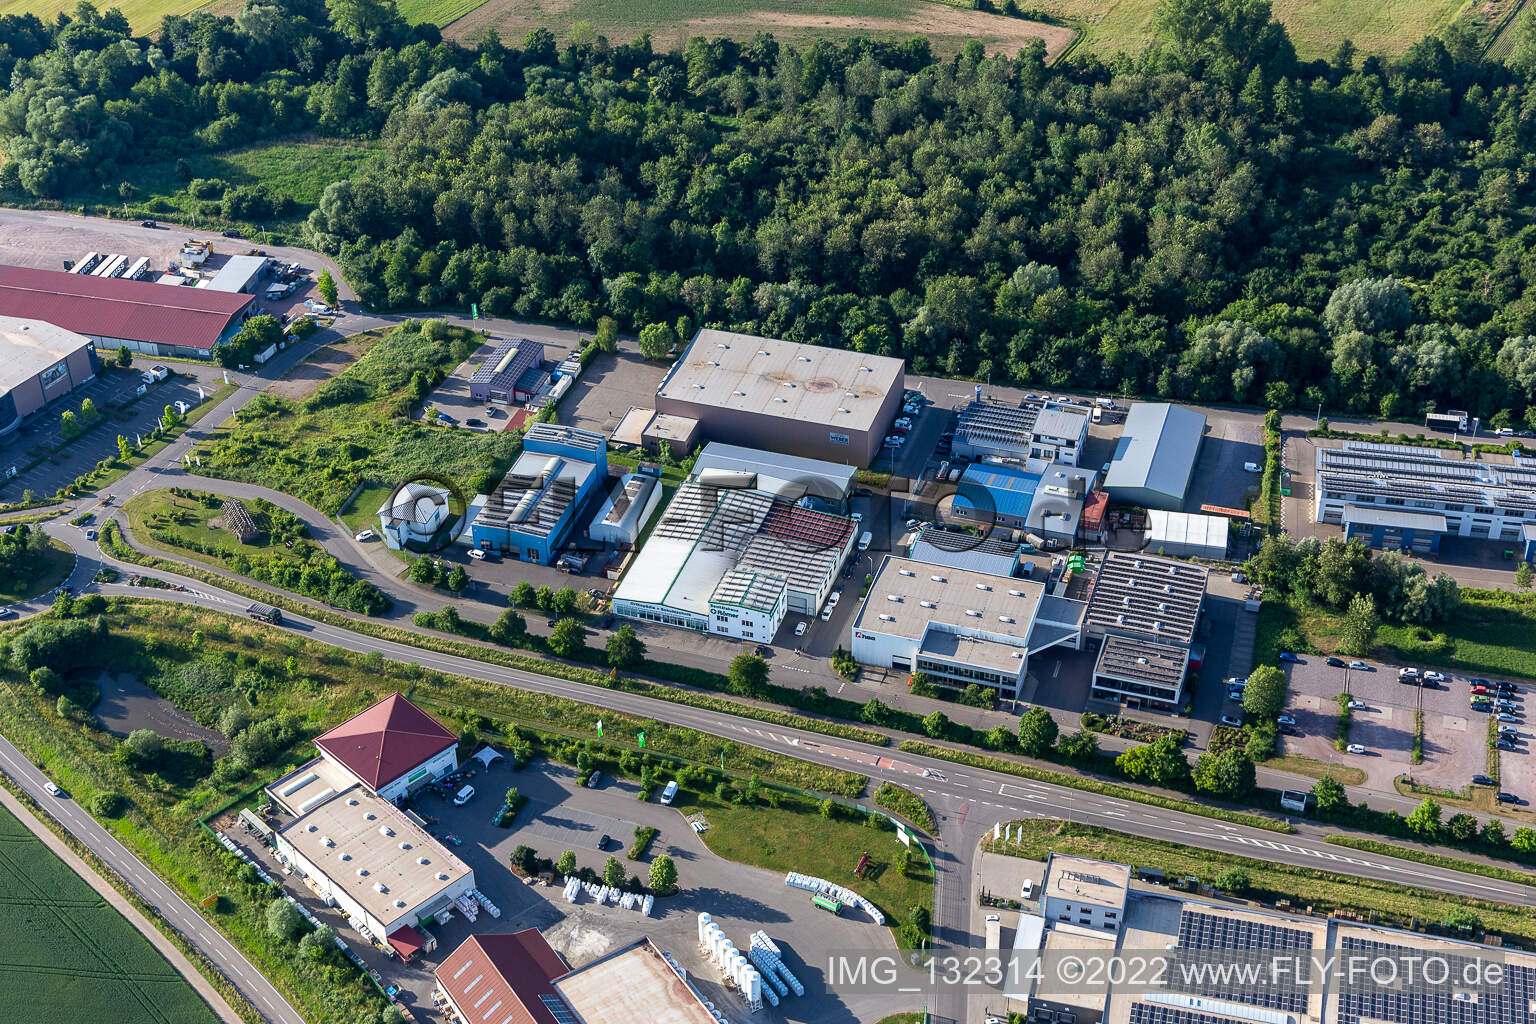 Sanitätshaus Römer GmbH & Co. KG in the district Herxheim in Herxheim bei Landau/Pfalz in the state Rhineland-Palatinate, Germany